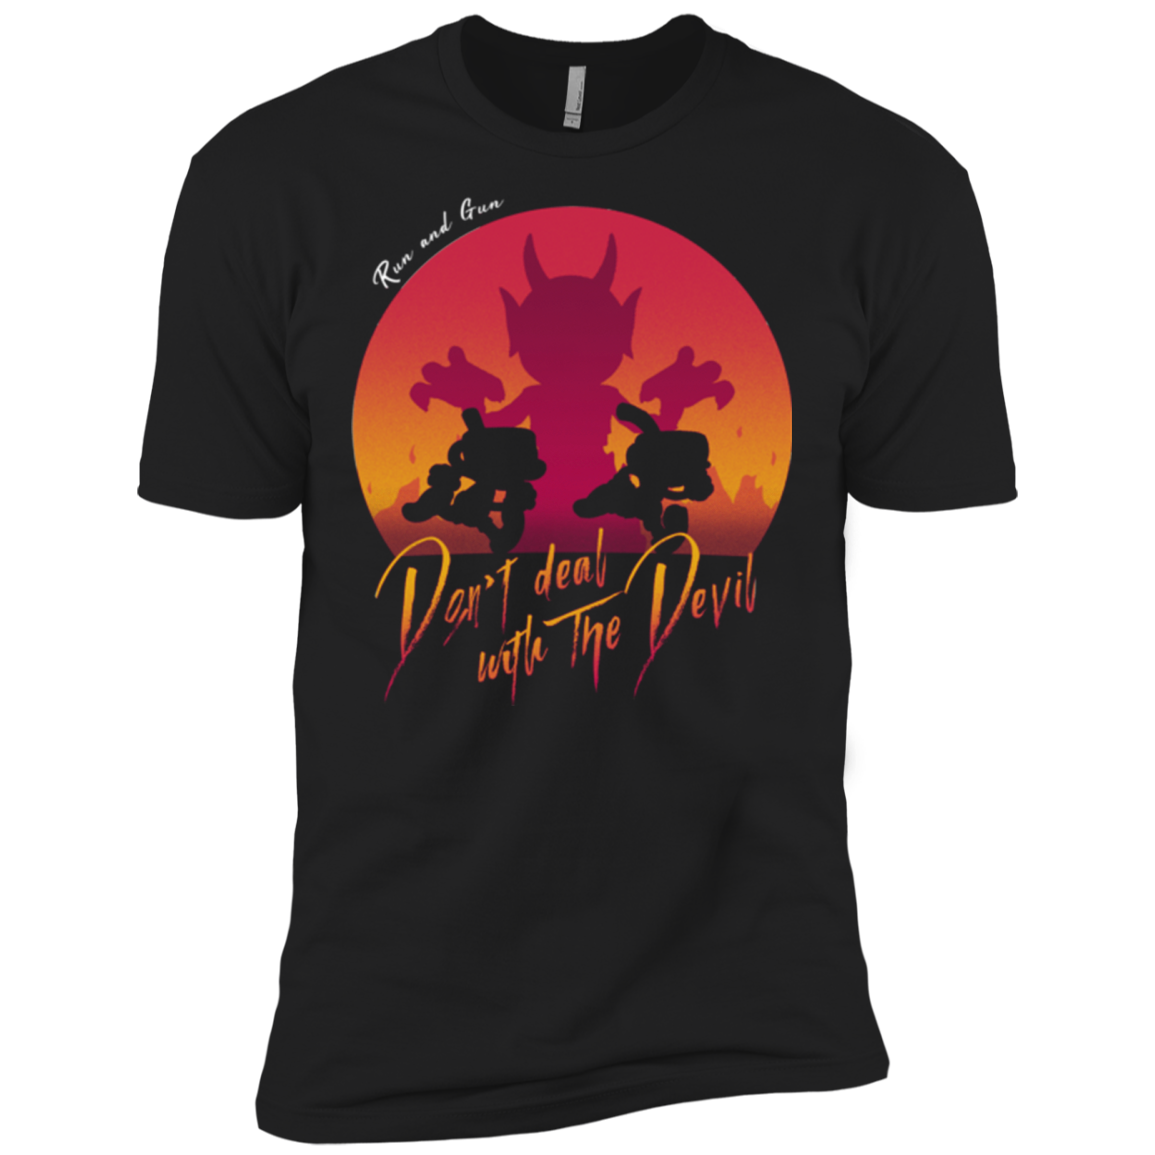 Don't deal with the Devil Men's Premium T-Shirt